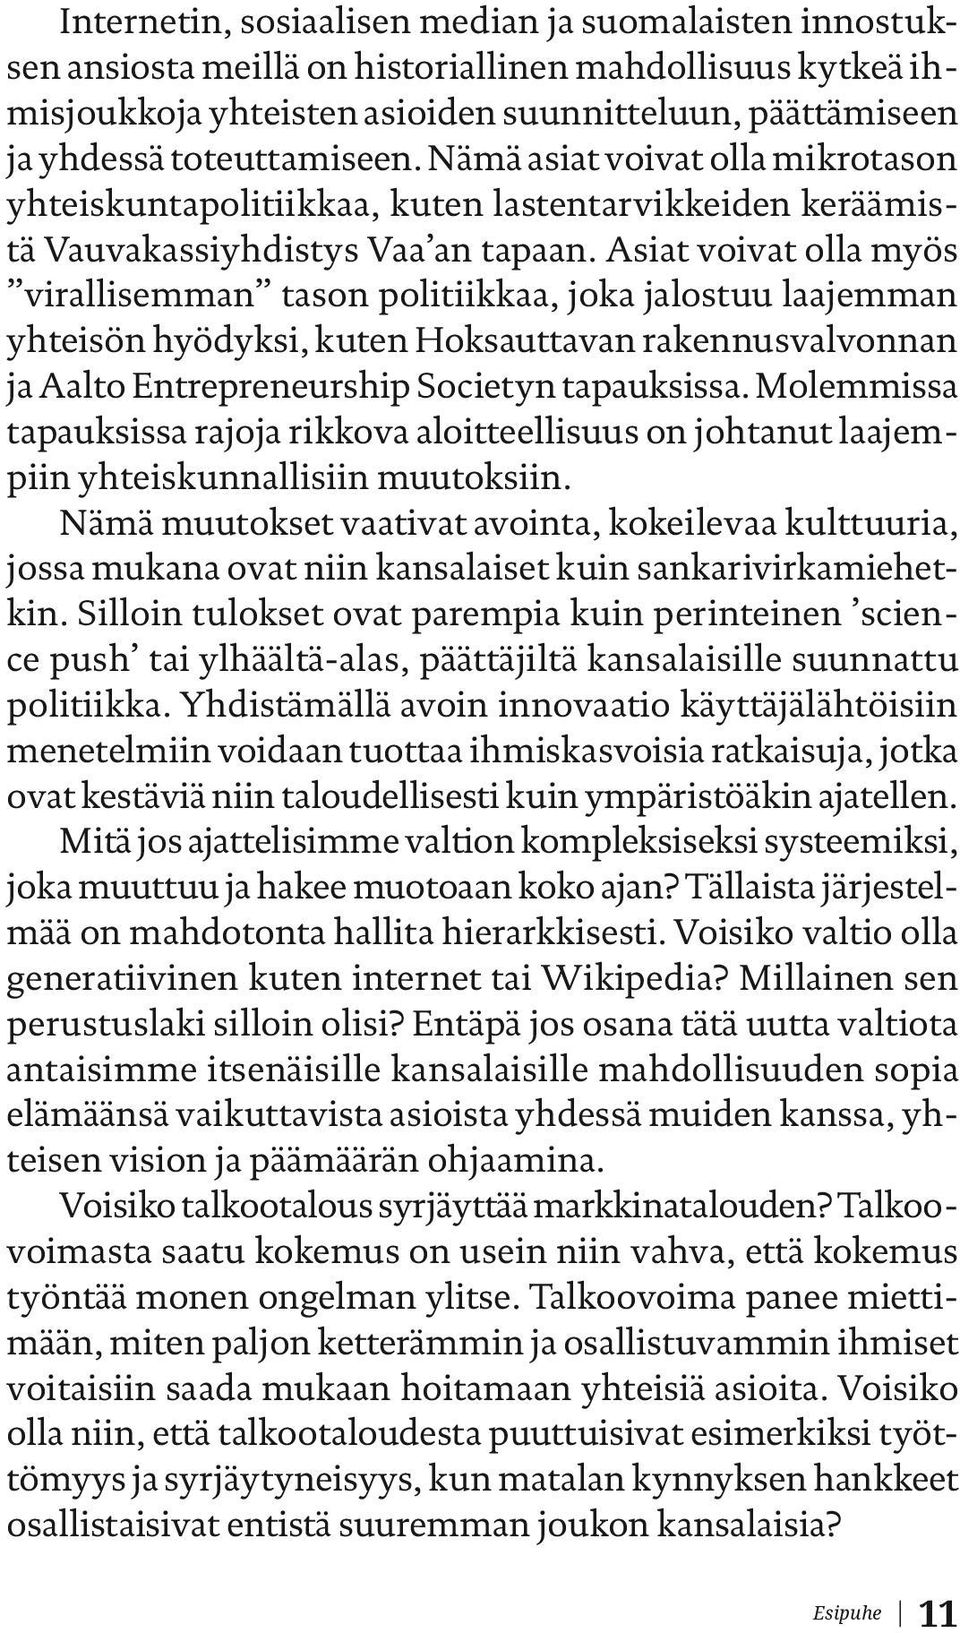 Asiat voivat olla myös virallisemman tason politiikkaa, joka jalostuu laajemman yhteisön hyödyksi, kuten Hoksauttavan rakennusvalvonnan ja Aalto Entrepreneurship Societyn tapauksissa.